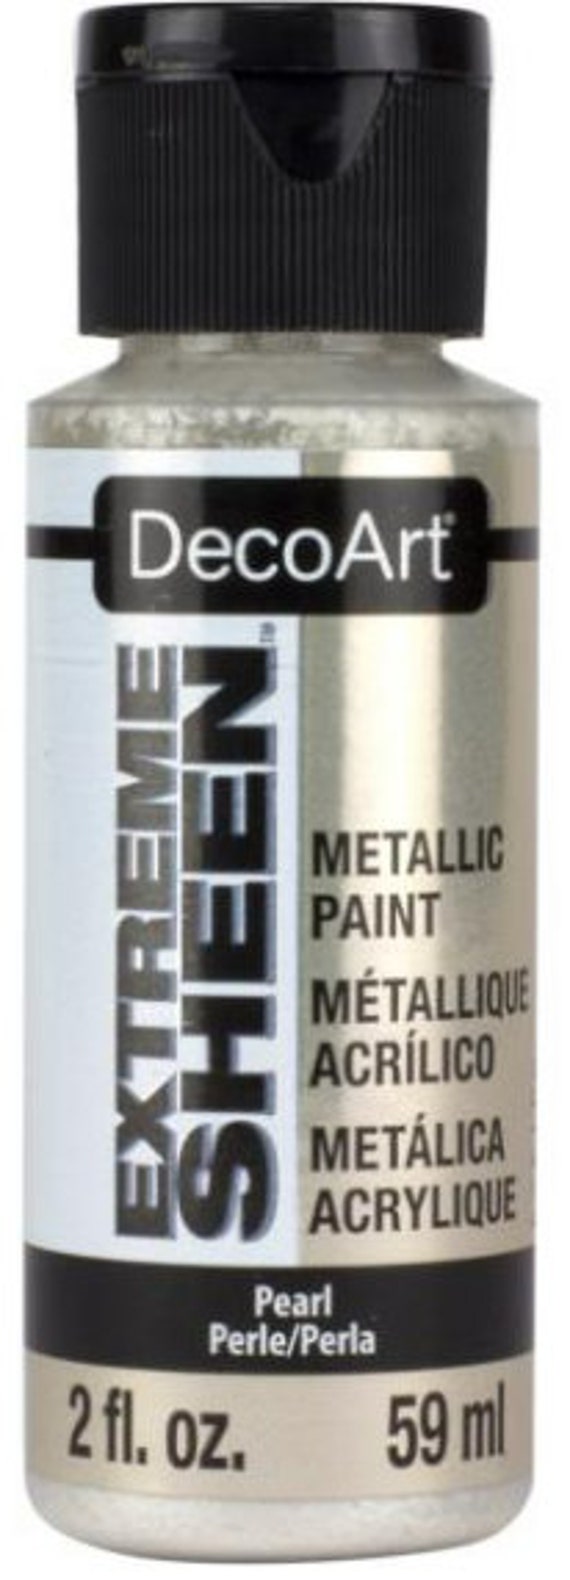 DecoArt Acrylic Paint Set Value Pack - 12 Colors, 2 oz Each (UNOPENED)